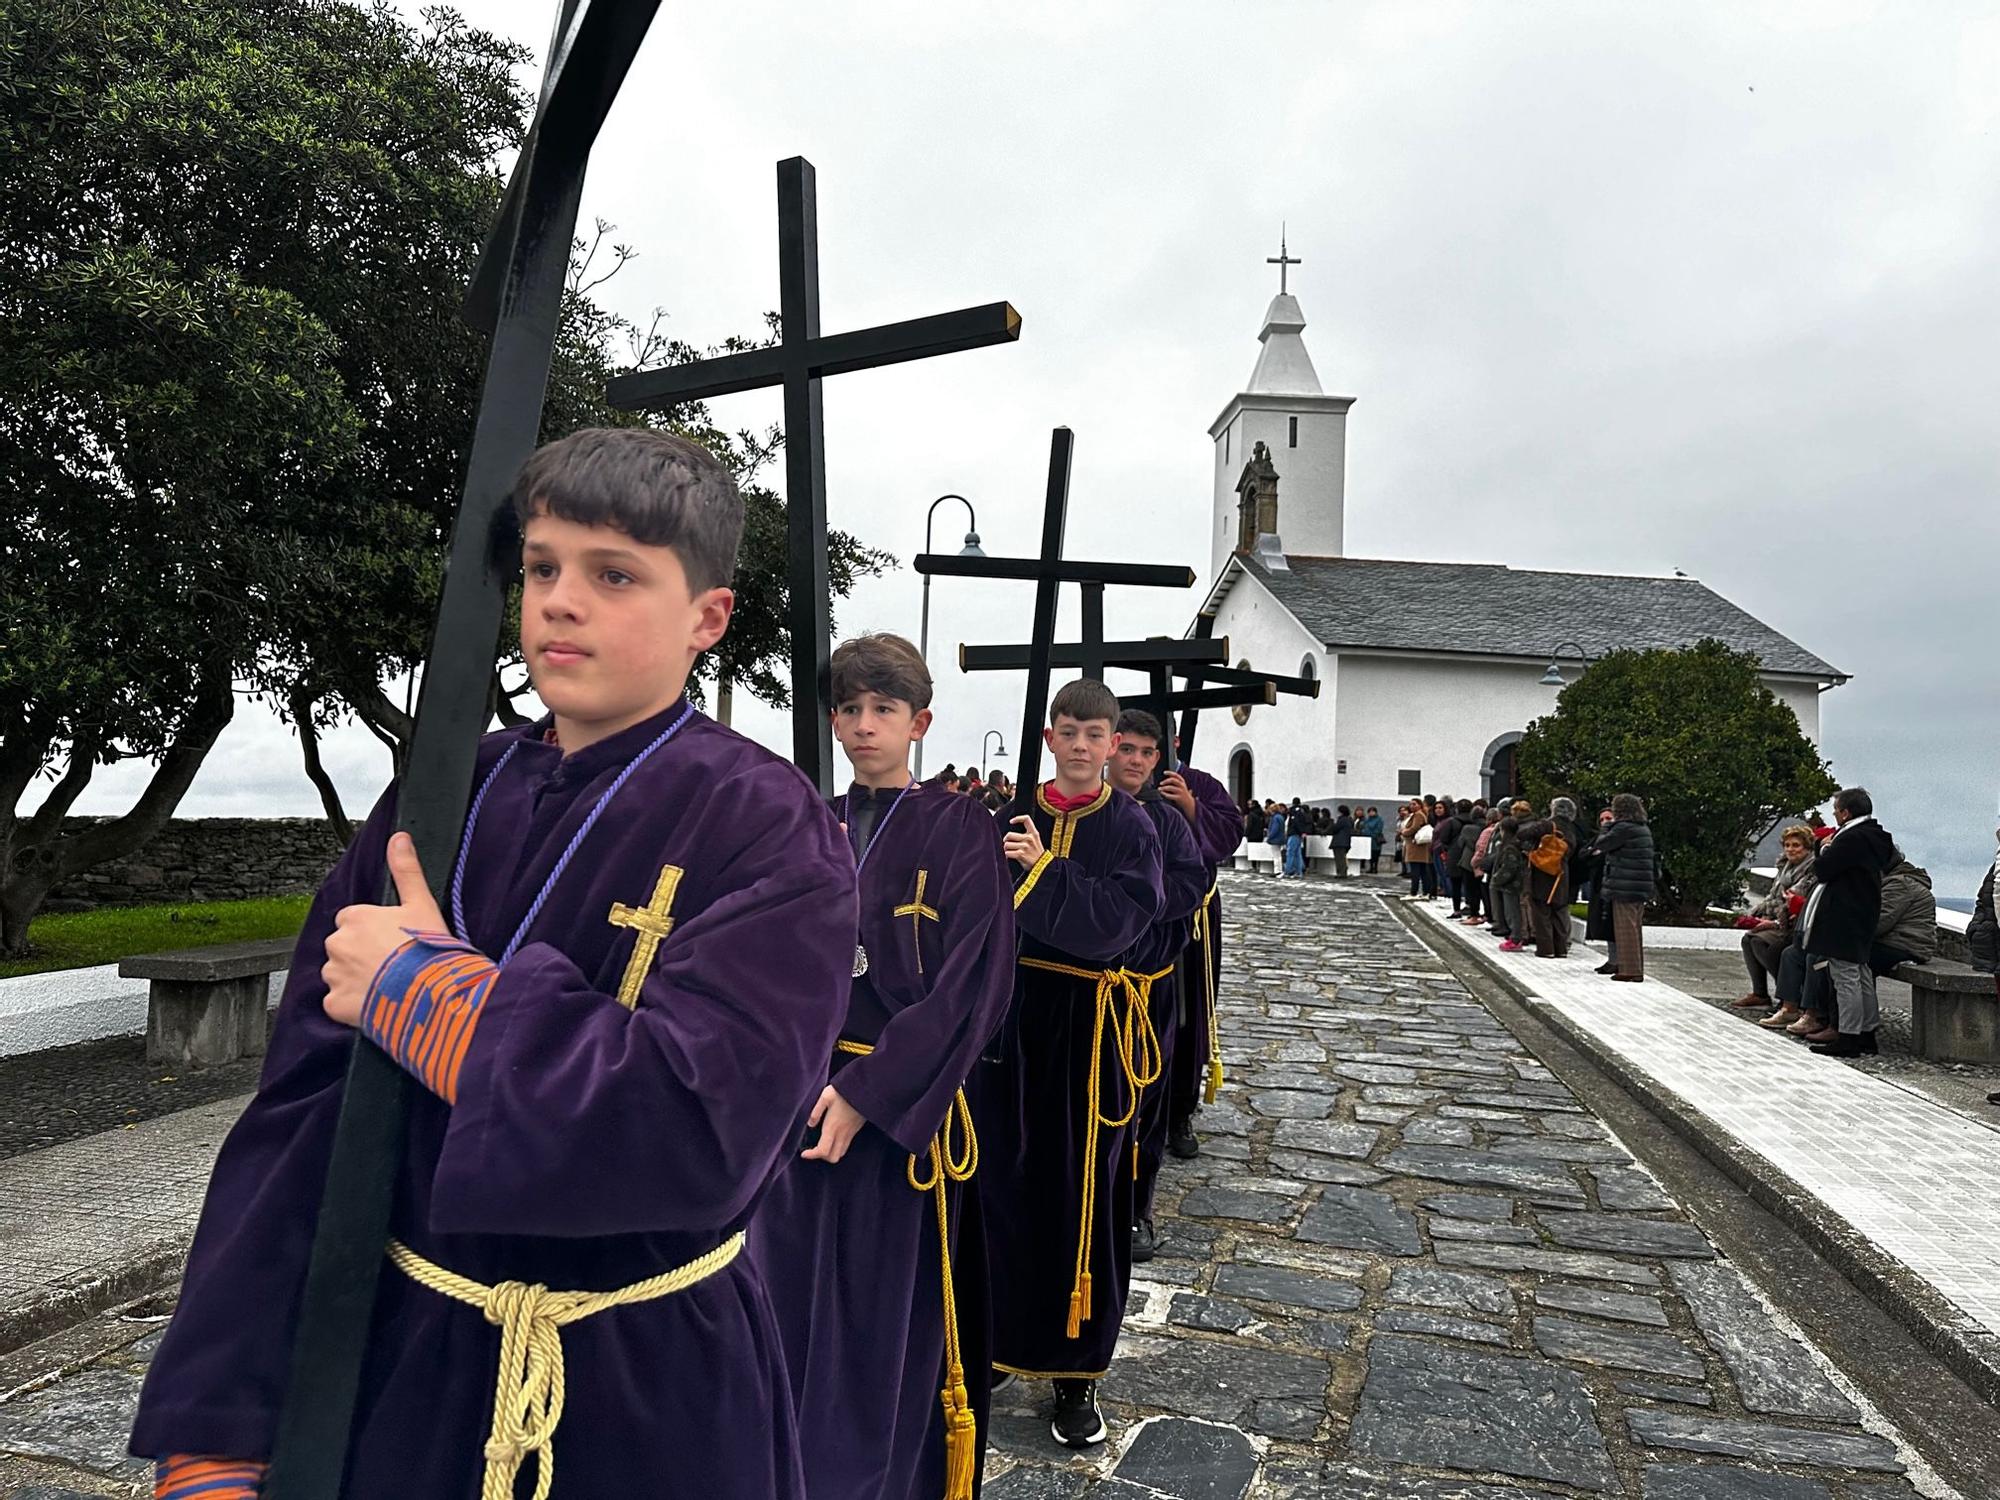 En imágenes: el Nazareno deslumbra en Luarca